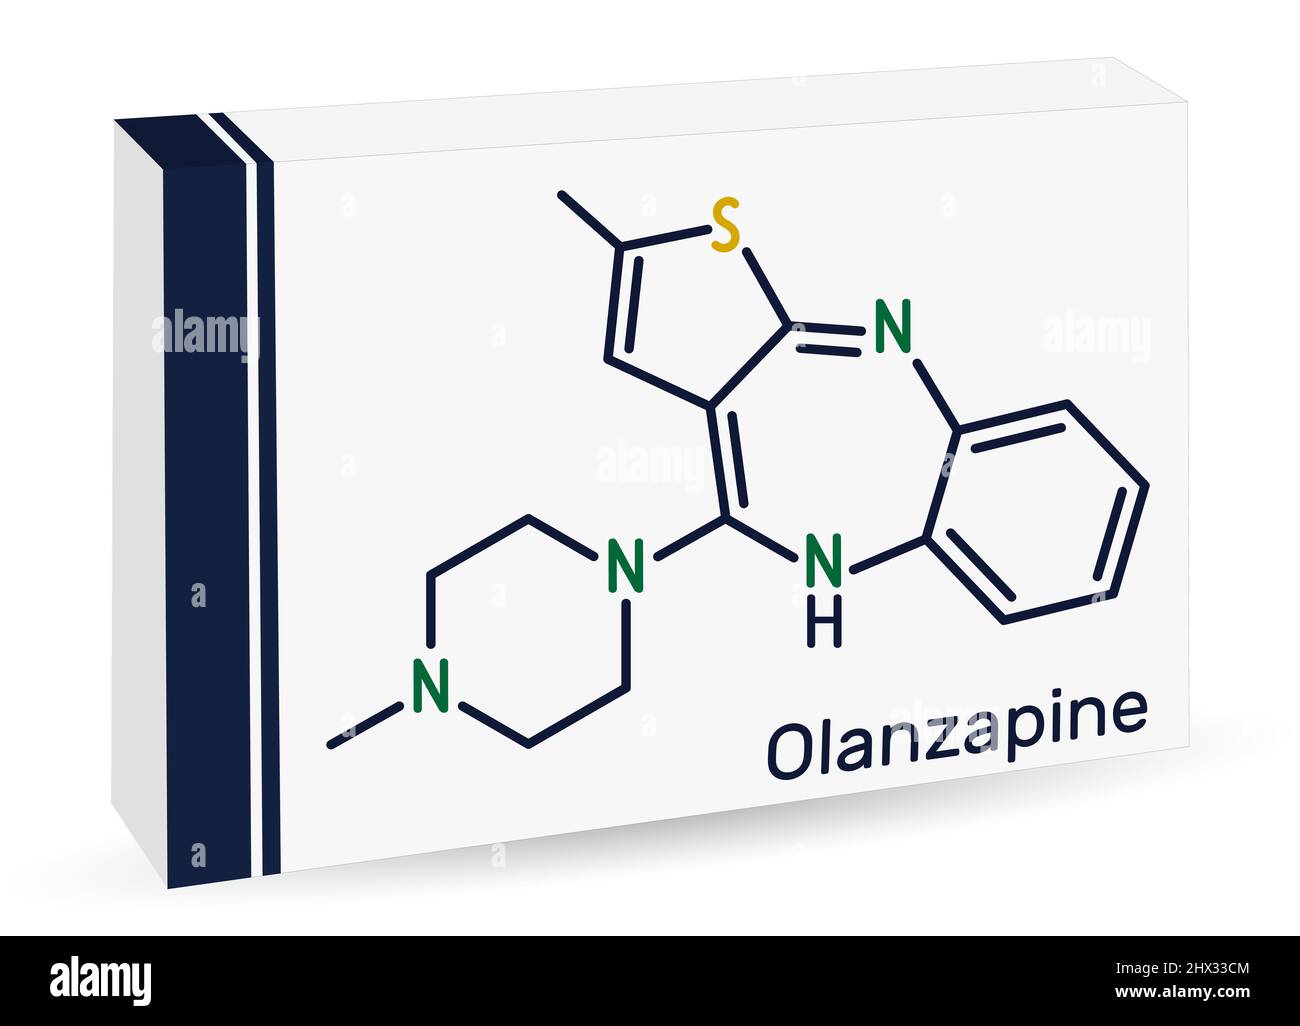 Olanzapin-Molekül. Es ist ein atypisches antipsychotisches Medikament zur Behandlung von Schizophrenie, bipolarer Störung. Chemische Formel des Skeletts. Papierverpackung Stock Vektor